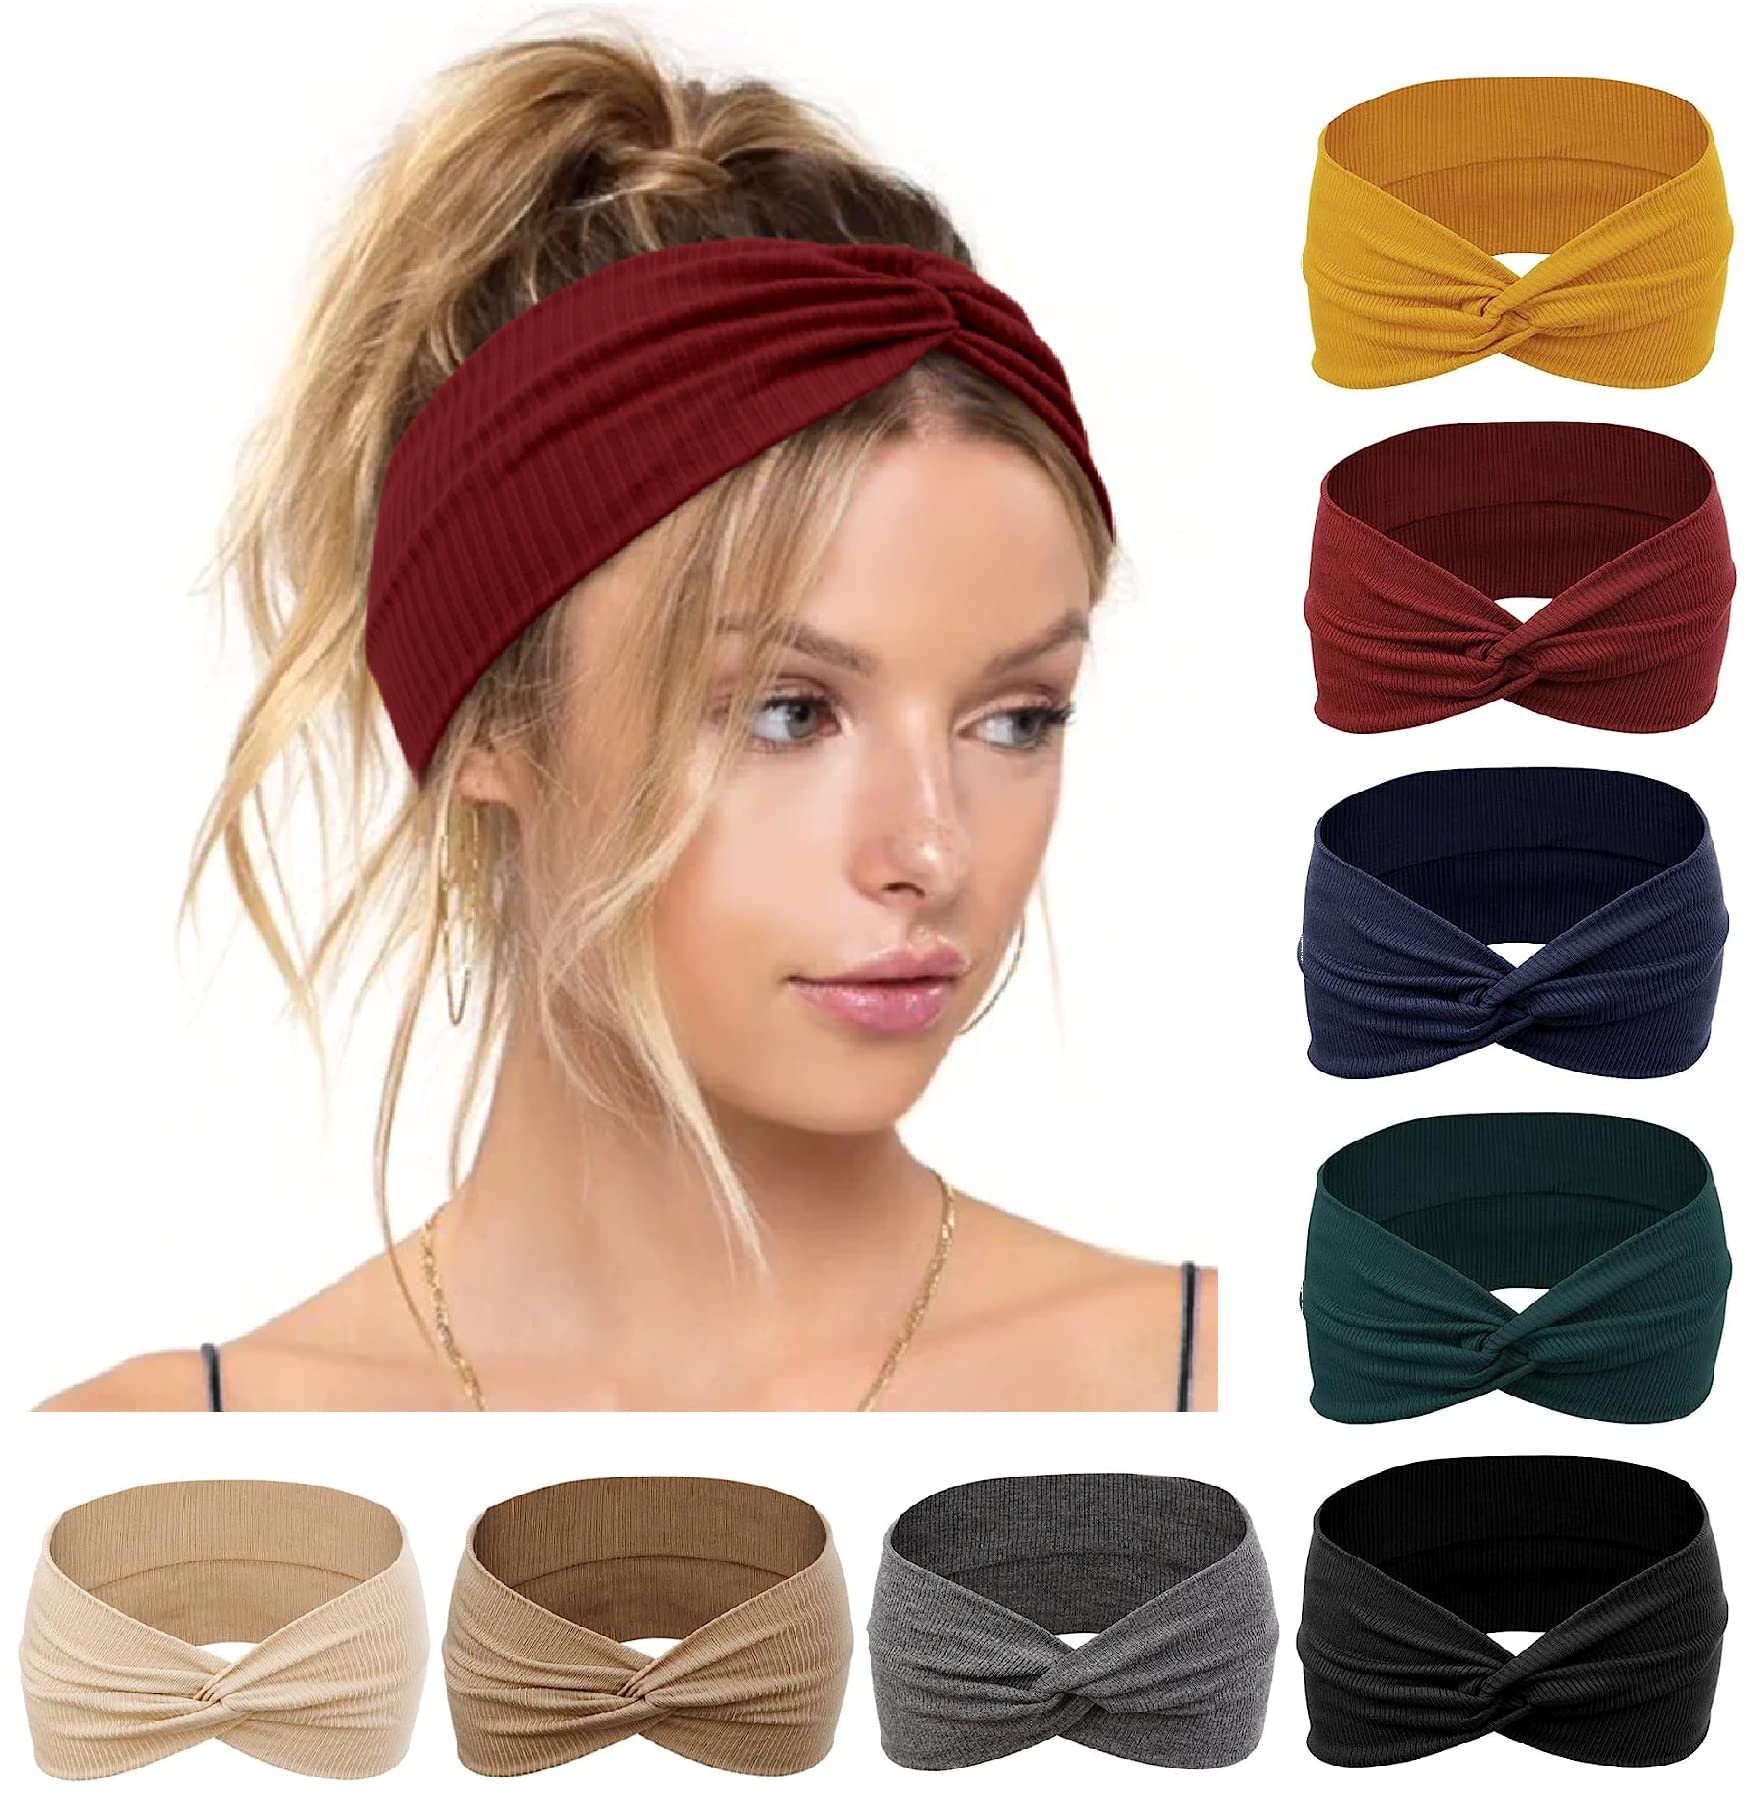 Wide headband elastic bandana turban hair band ladies. 08